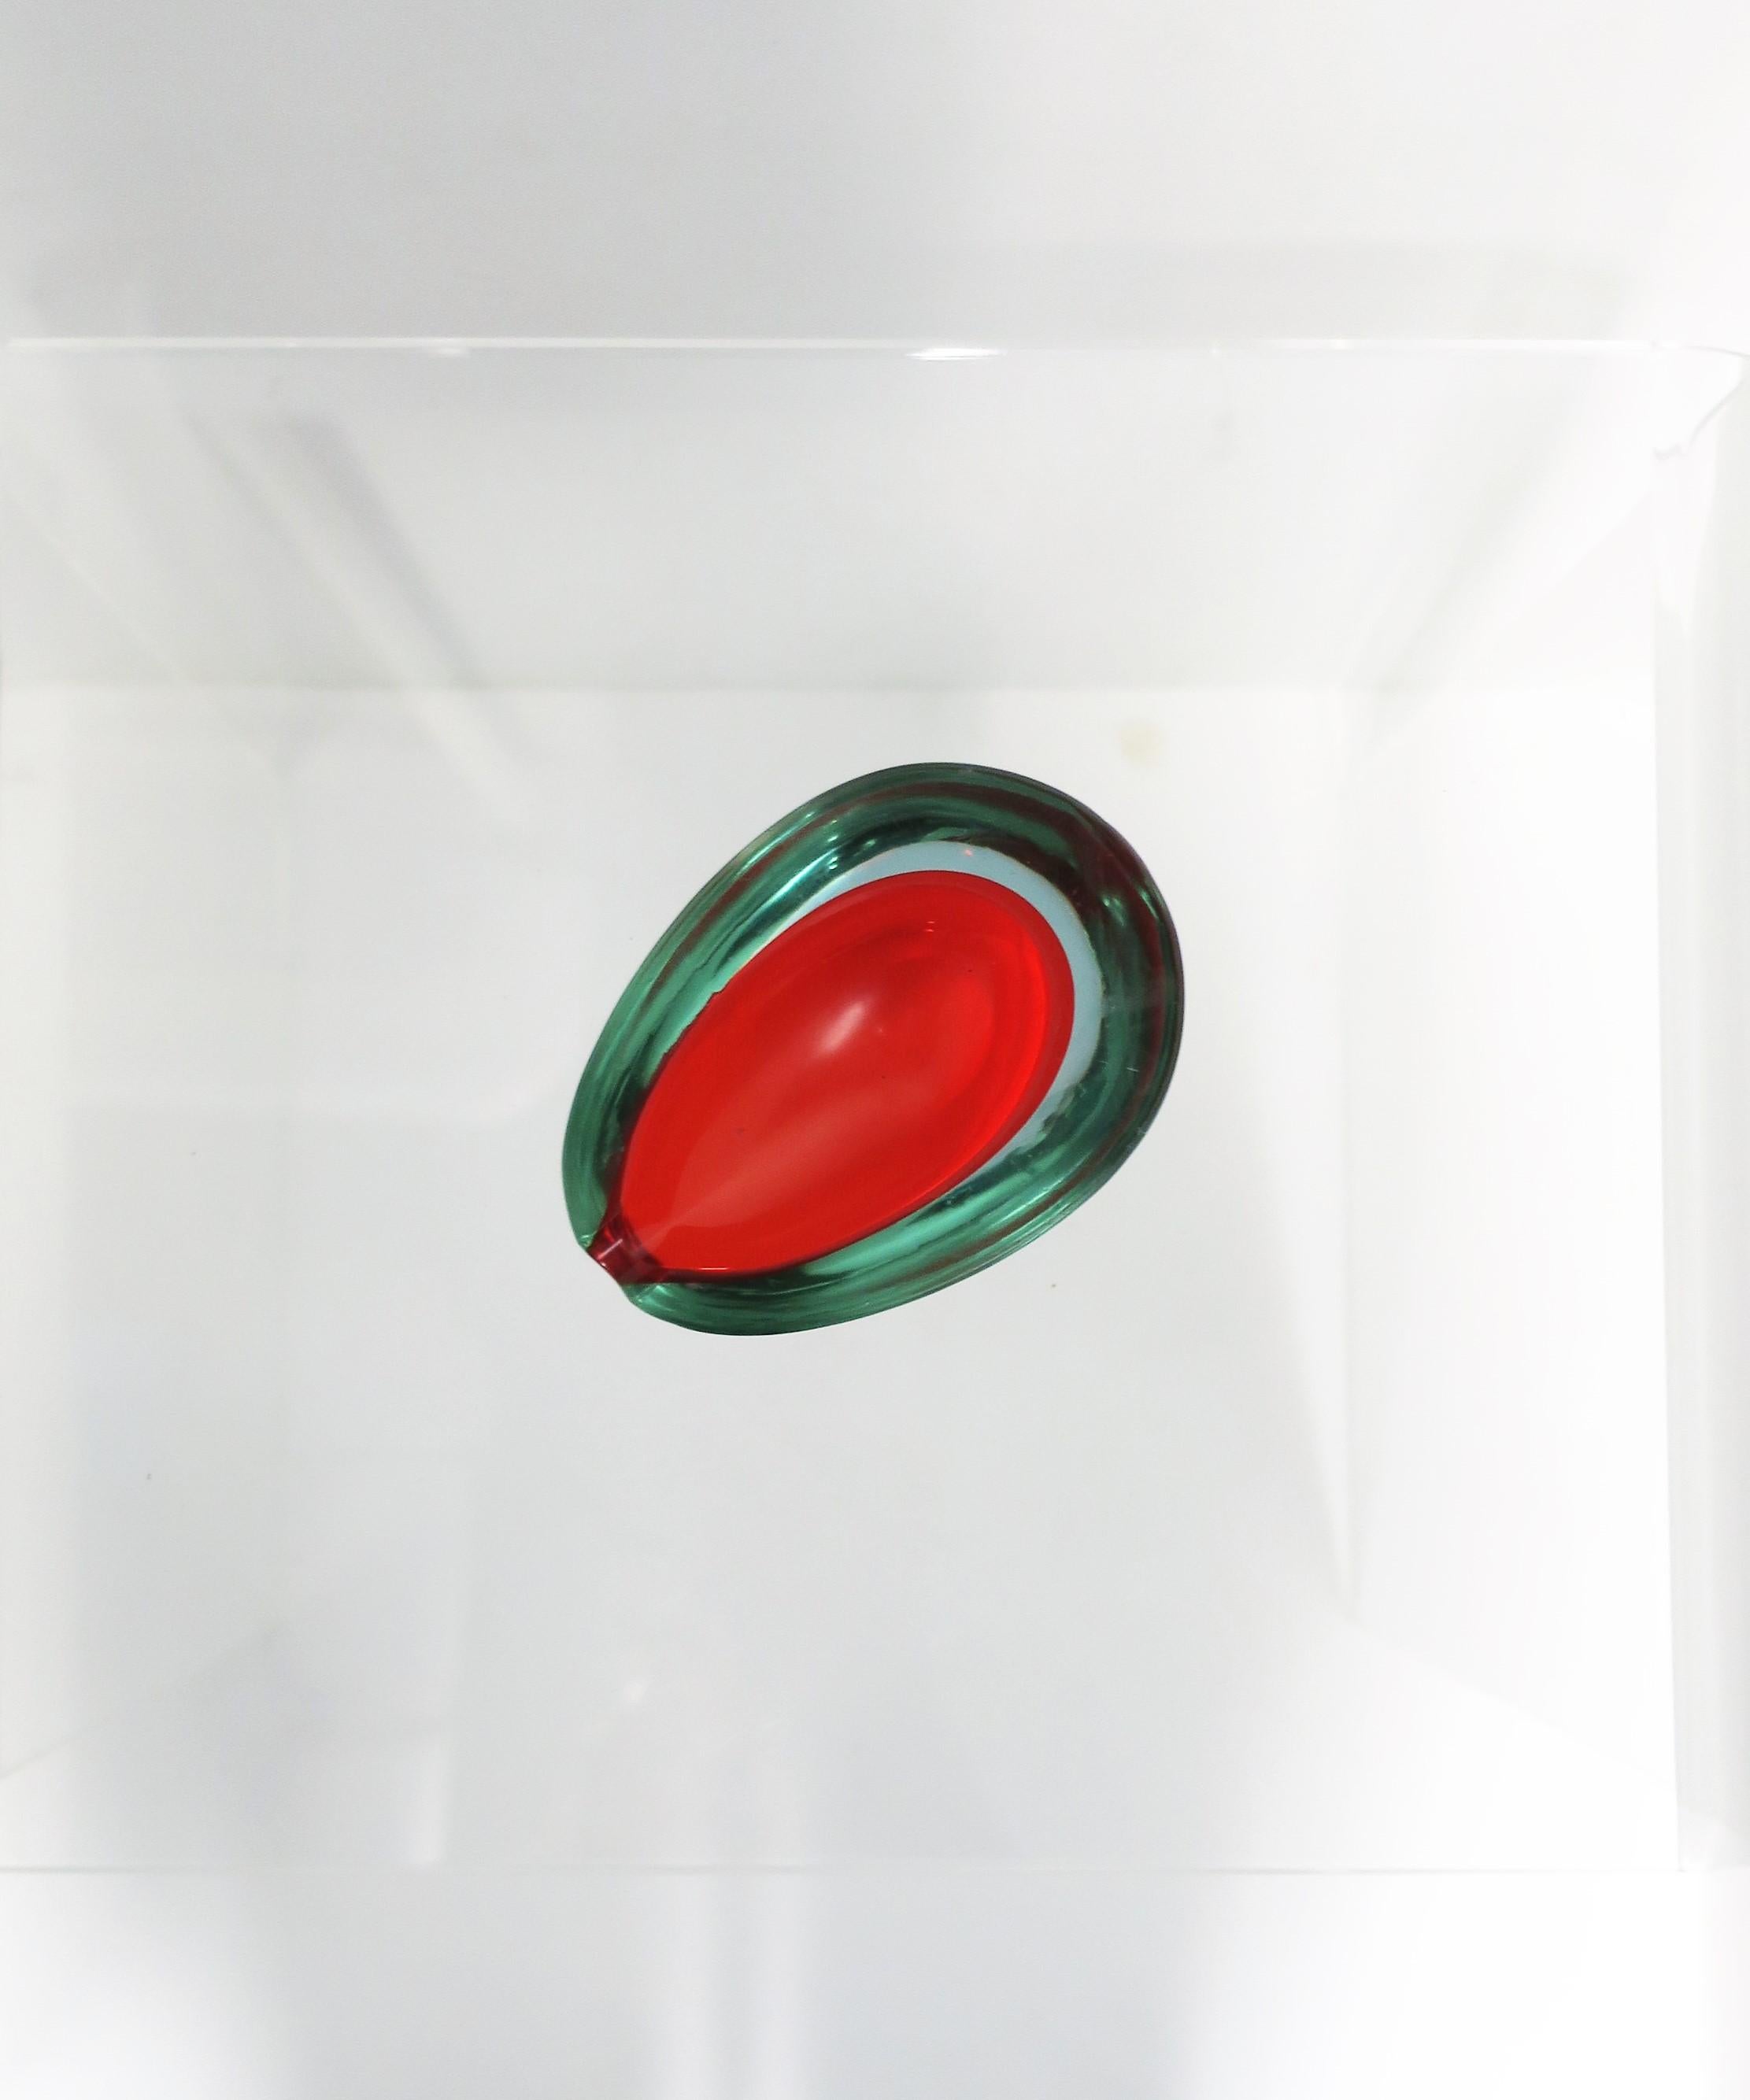 Posacenere in vetro artistico rosso di Murano, circa metà del XX secolo, Italia. Dimensioni: 1,5